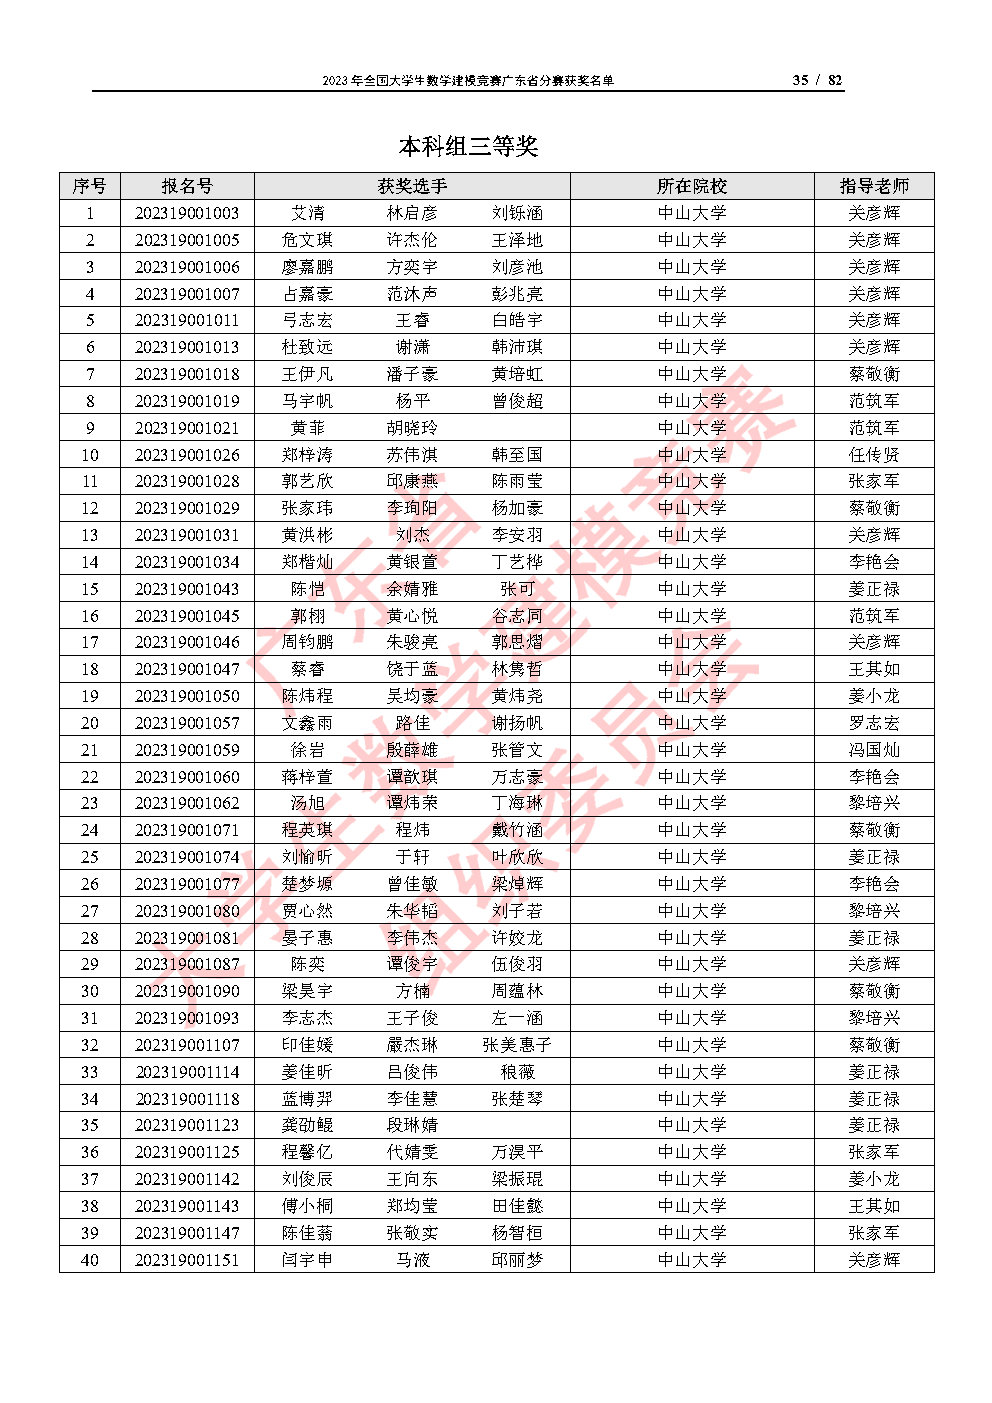 2023年全国大学生数学建模竞赛广东省分赛获奖名单_Page35.jpg